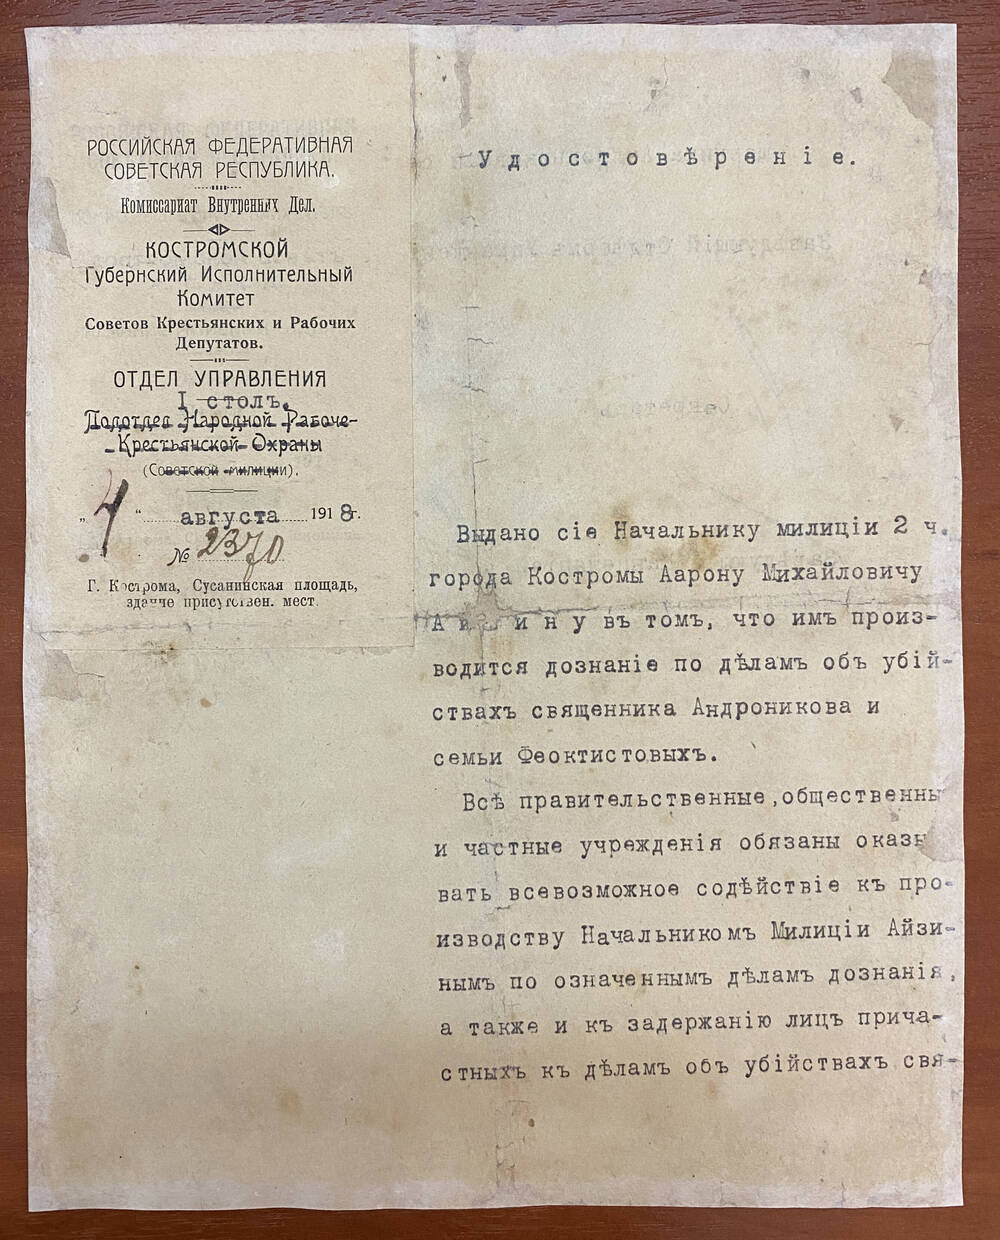 Удостоверение № 2370 от 4 августа 1918 г. выдано нач. милиции 2 части города Костромы А. М. Айзину, в том, что им производится дознание по делам об убийствах. Три подписи